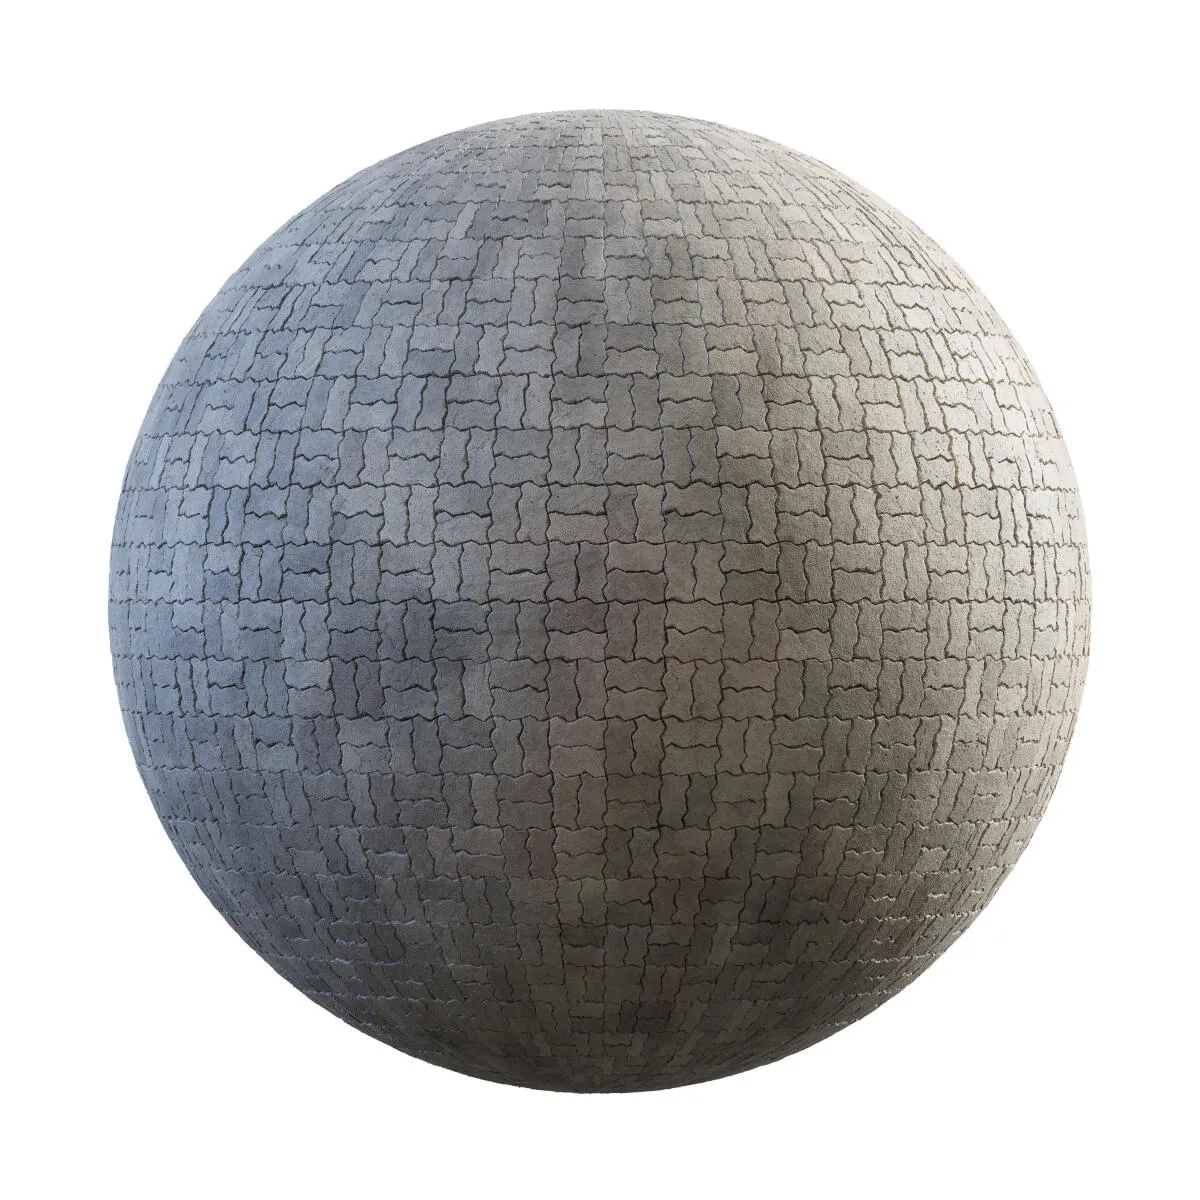 PBR Textures Volume 34 – Pavements – 4K – grey_concrete_pavement_36_02